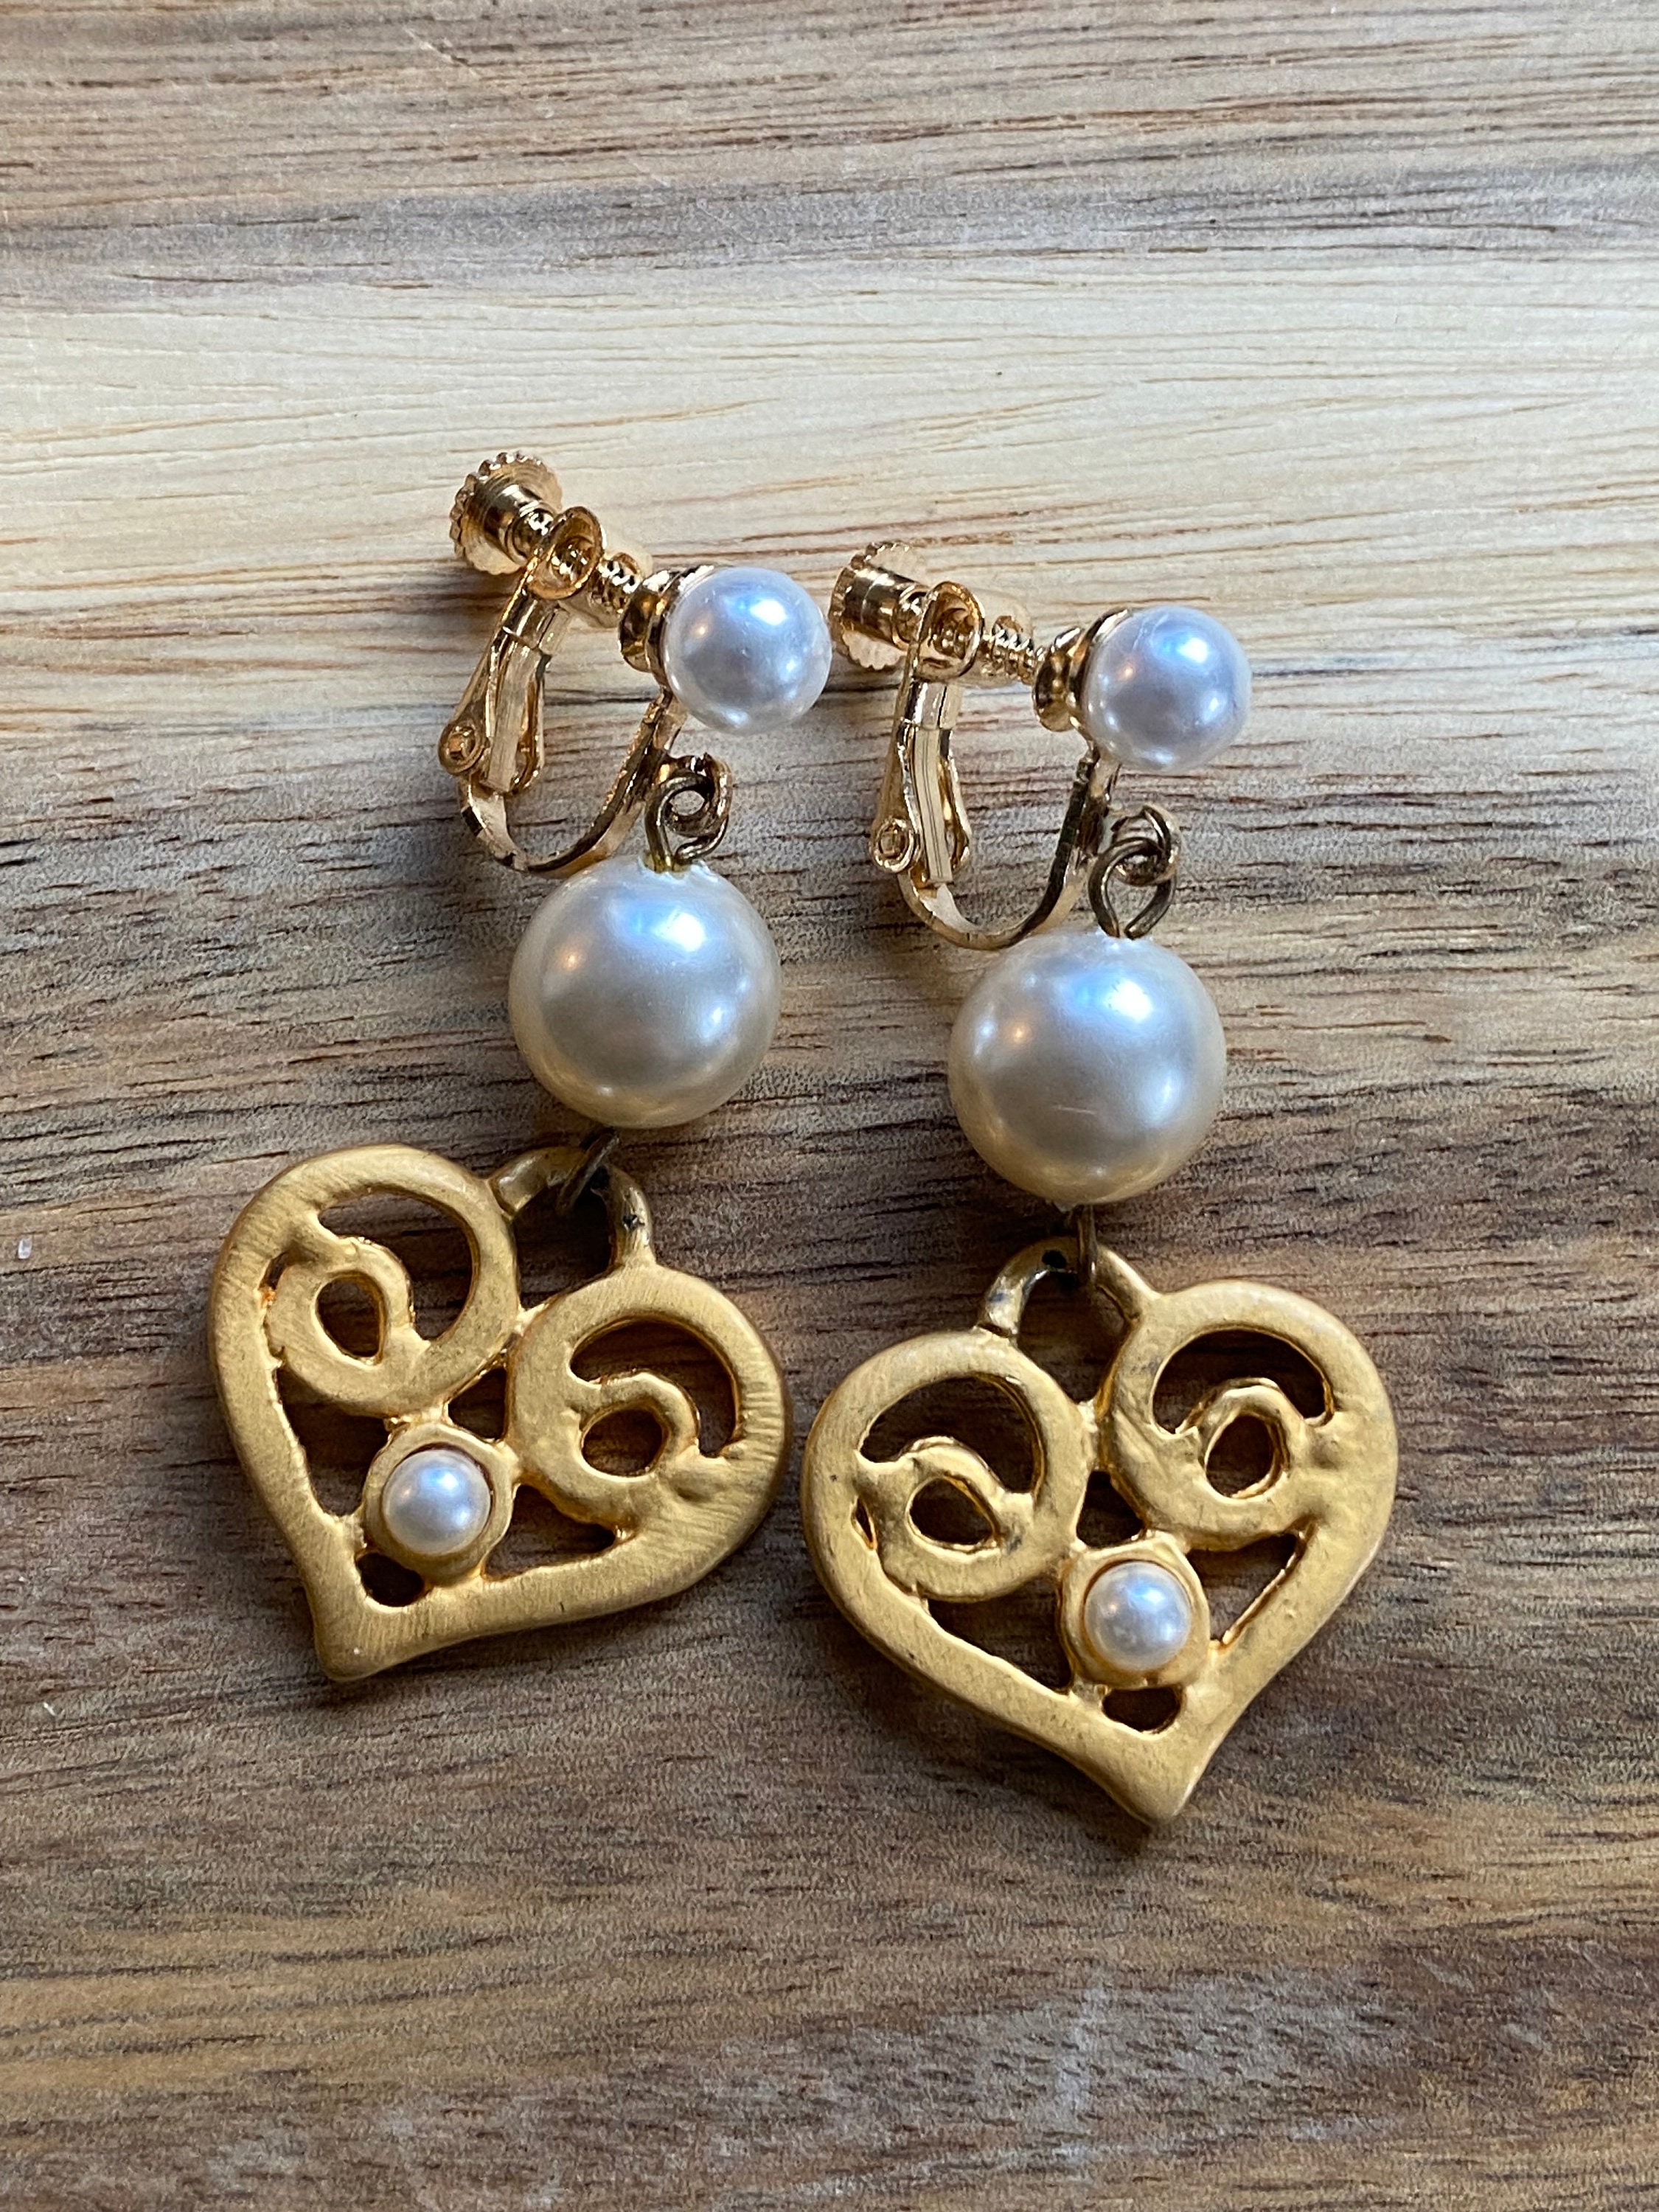 Vintage Clip on Faux Pearl Heart-shaped Earrings Dangling 